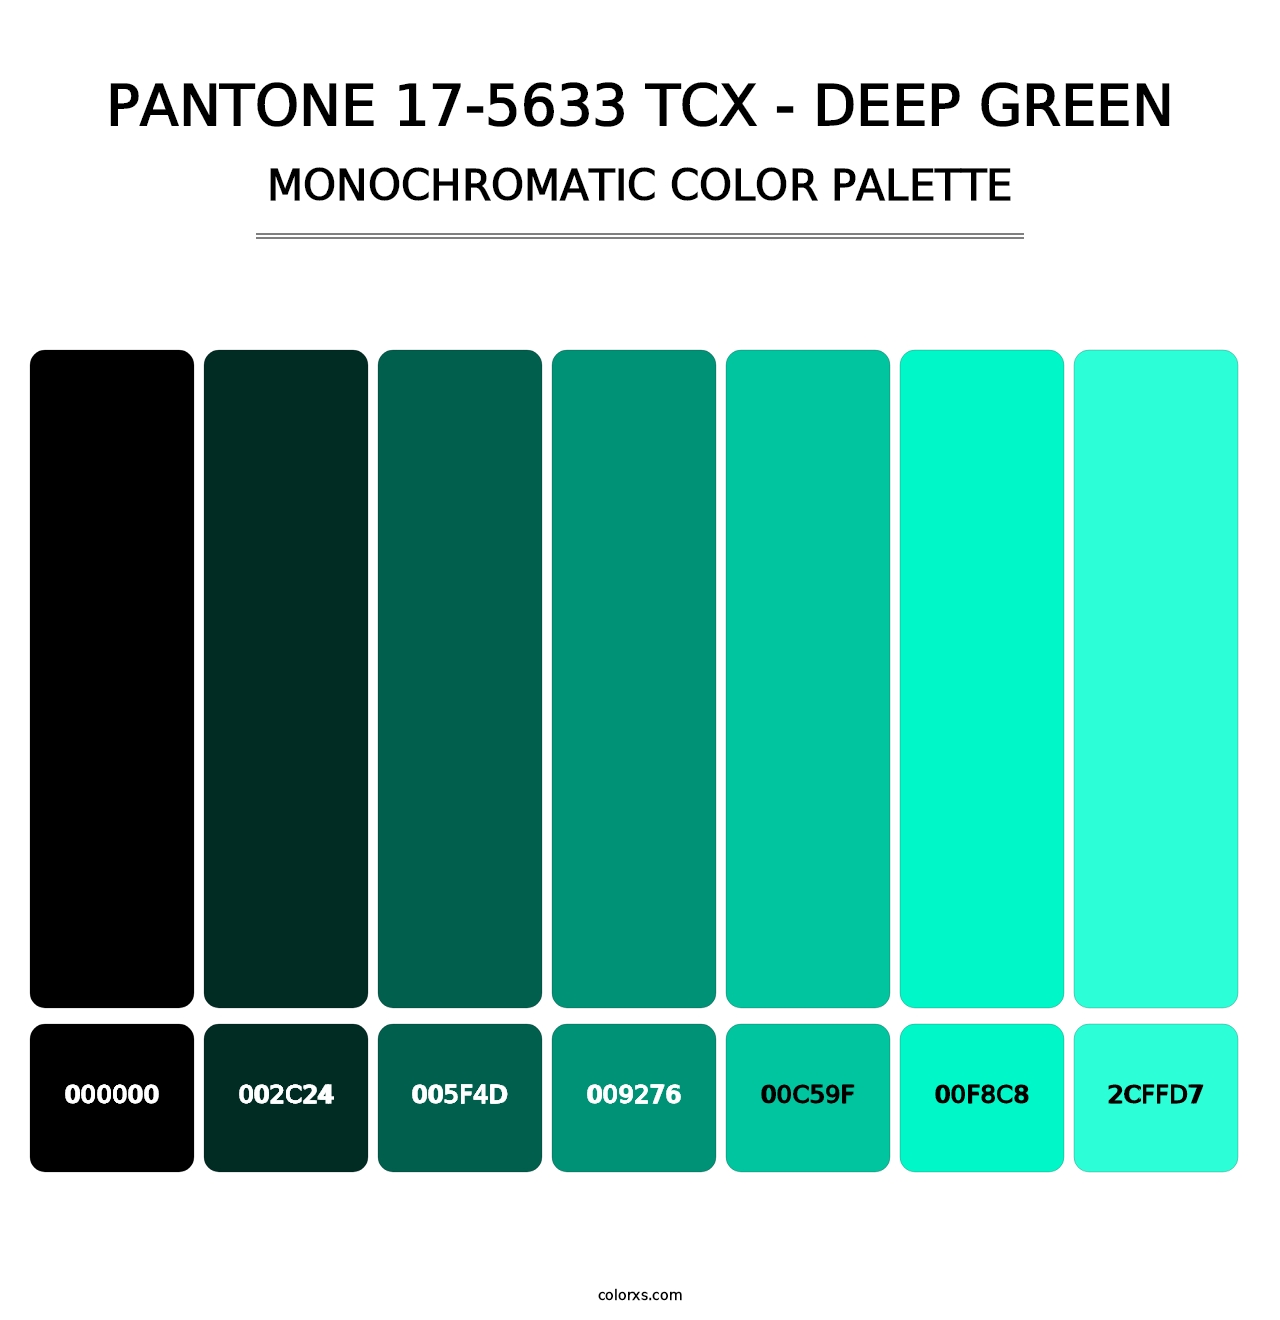 PANTONE 17-5633 TCX - Deep Green - Monochromatic Color Palette